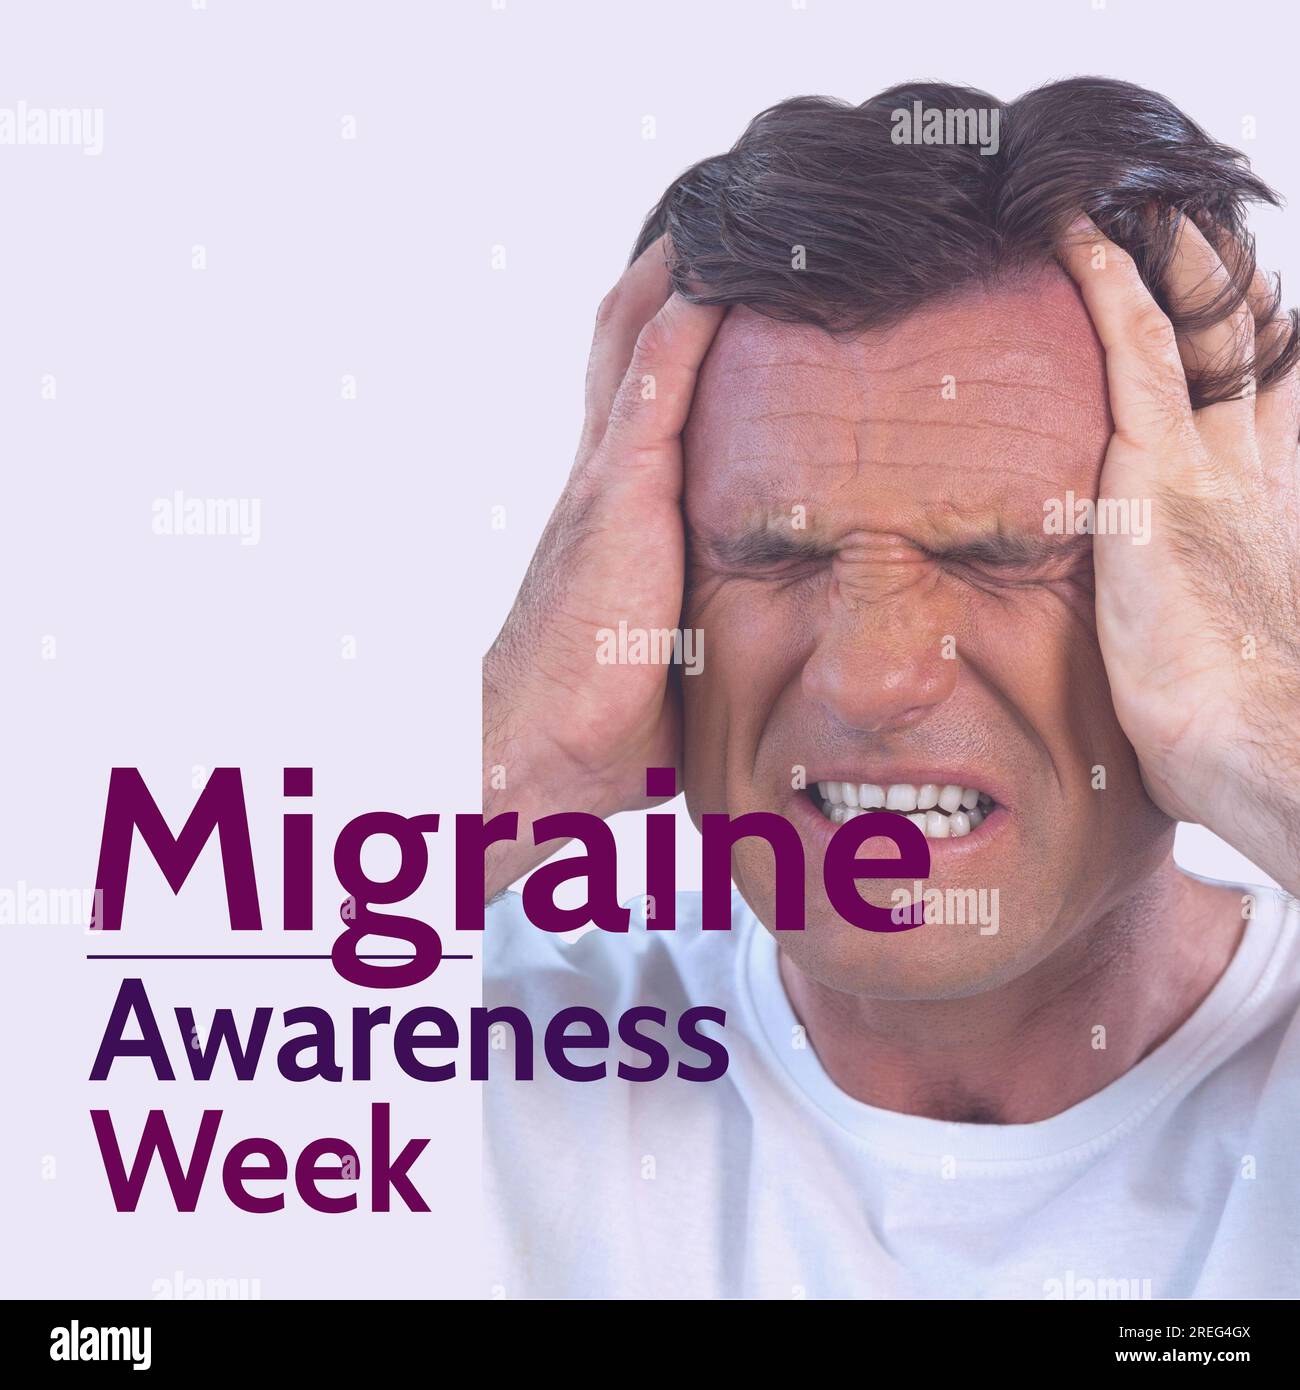 Migraine awareness week text in purple over caucasian man clutching head in pain Stock Photo